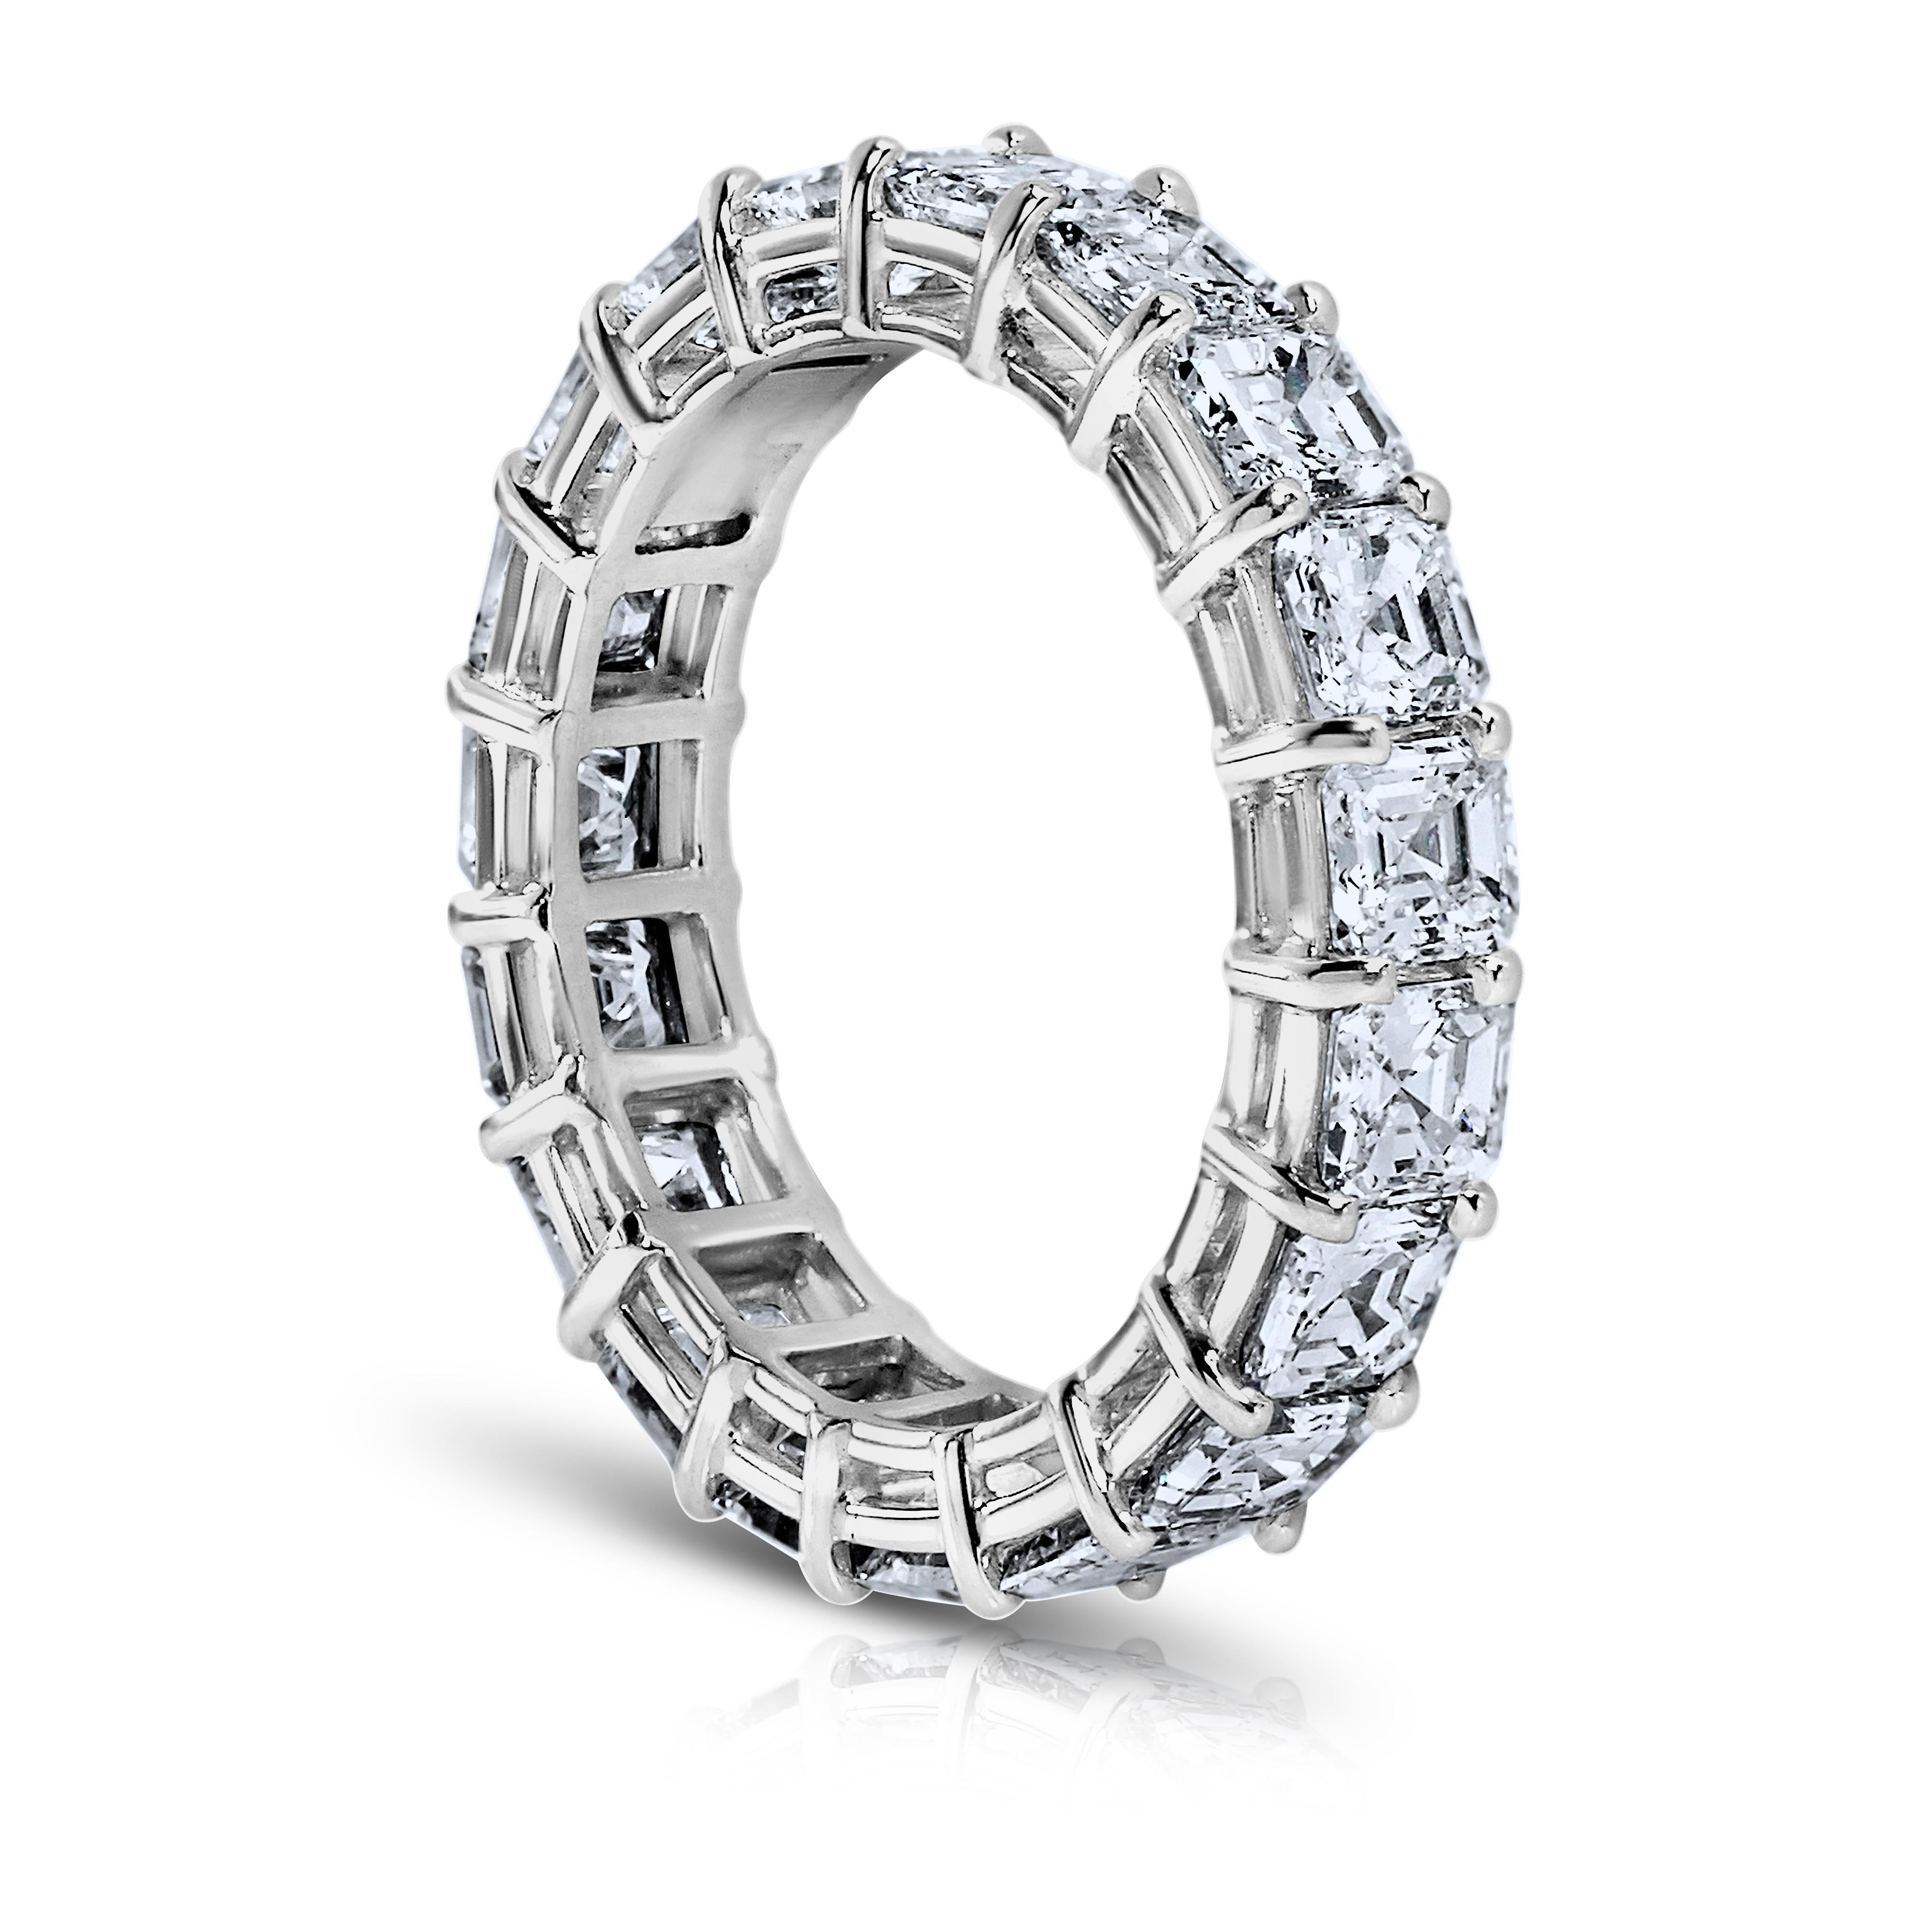 Asher Cut diamond ring platinum eternity band shared prong style with a gallery.
14 diamants parfaitement assortis pesant au minimum 7 cts. Certificats G.I.A. pour chaque diamant. Les couleurs vont de D à F. VVS1-VS2 en clarté, taille de doigt 5.